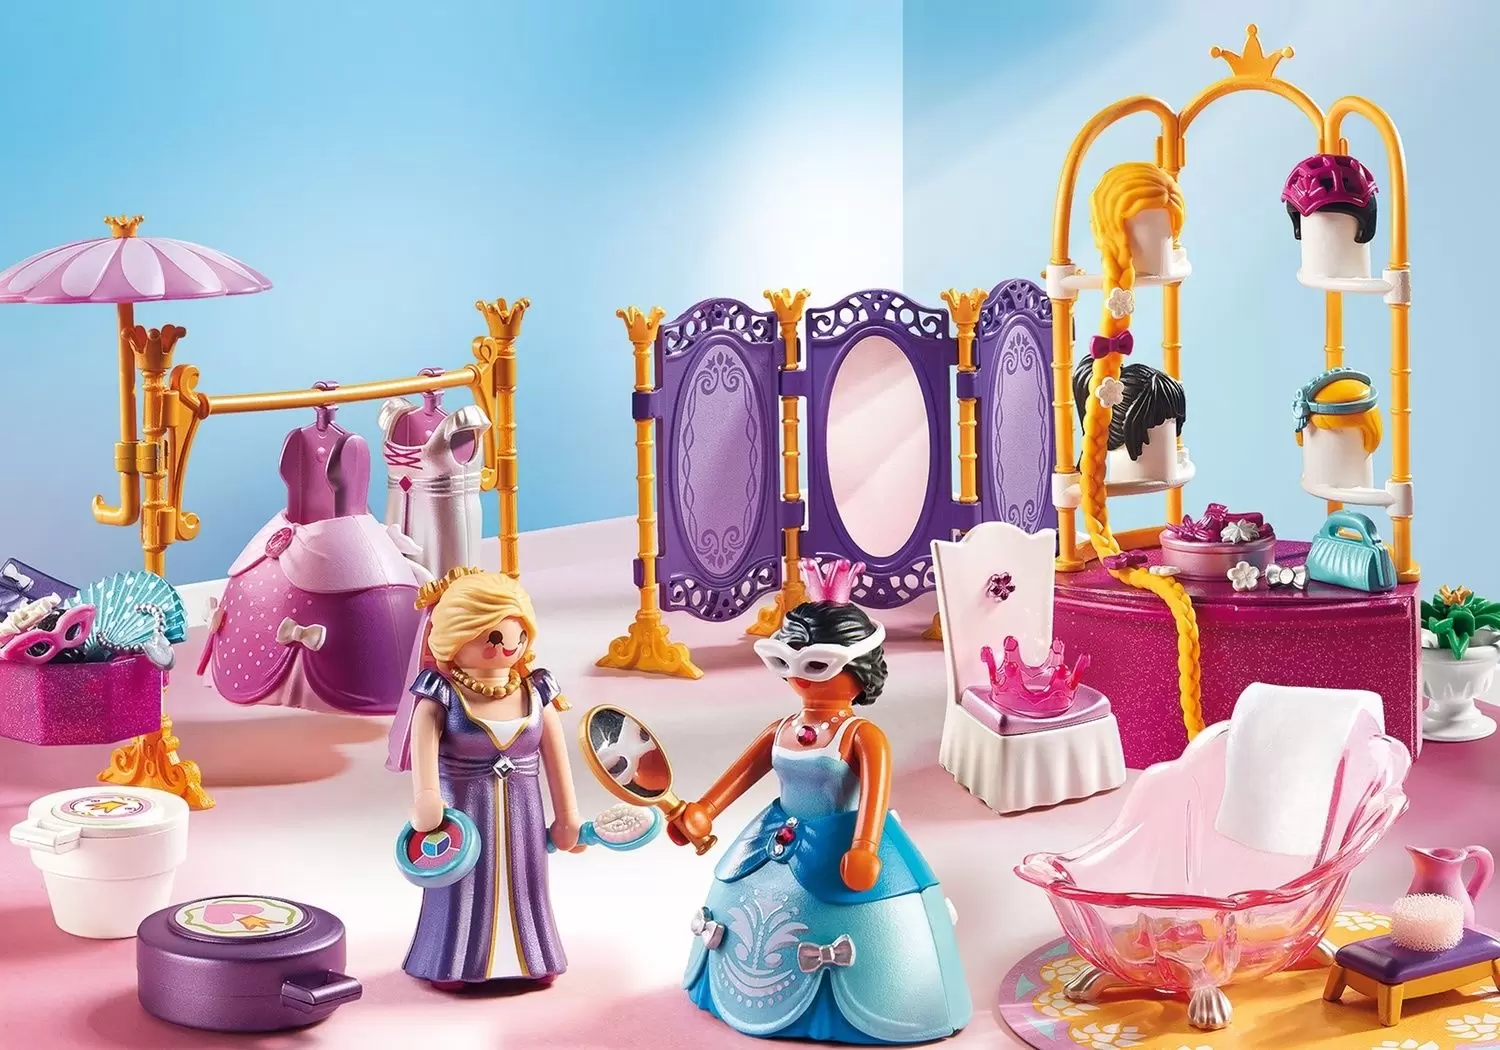 Playmobil Princess - Princesses wardrobe